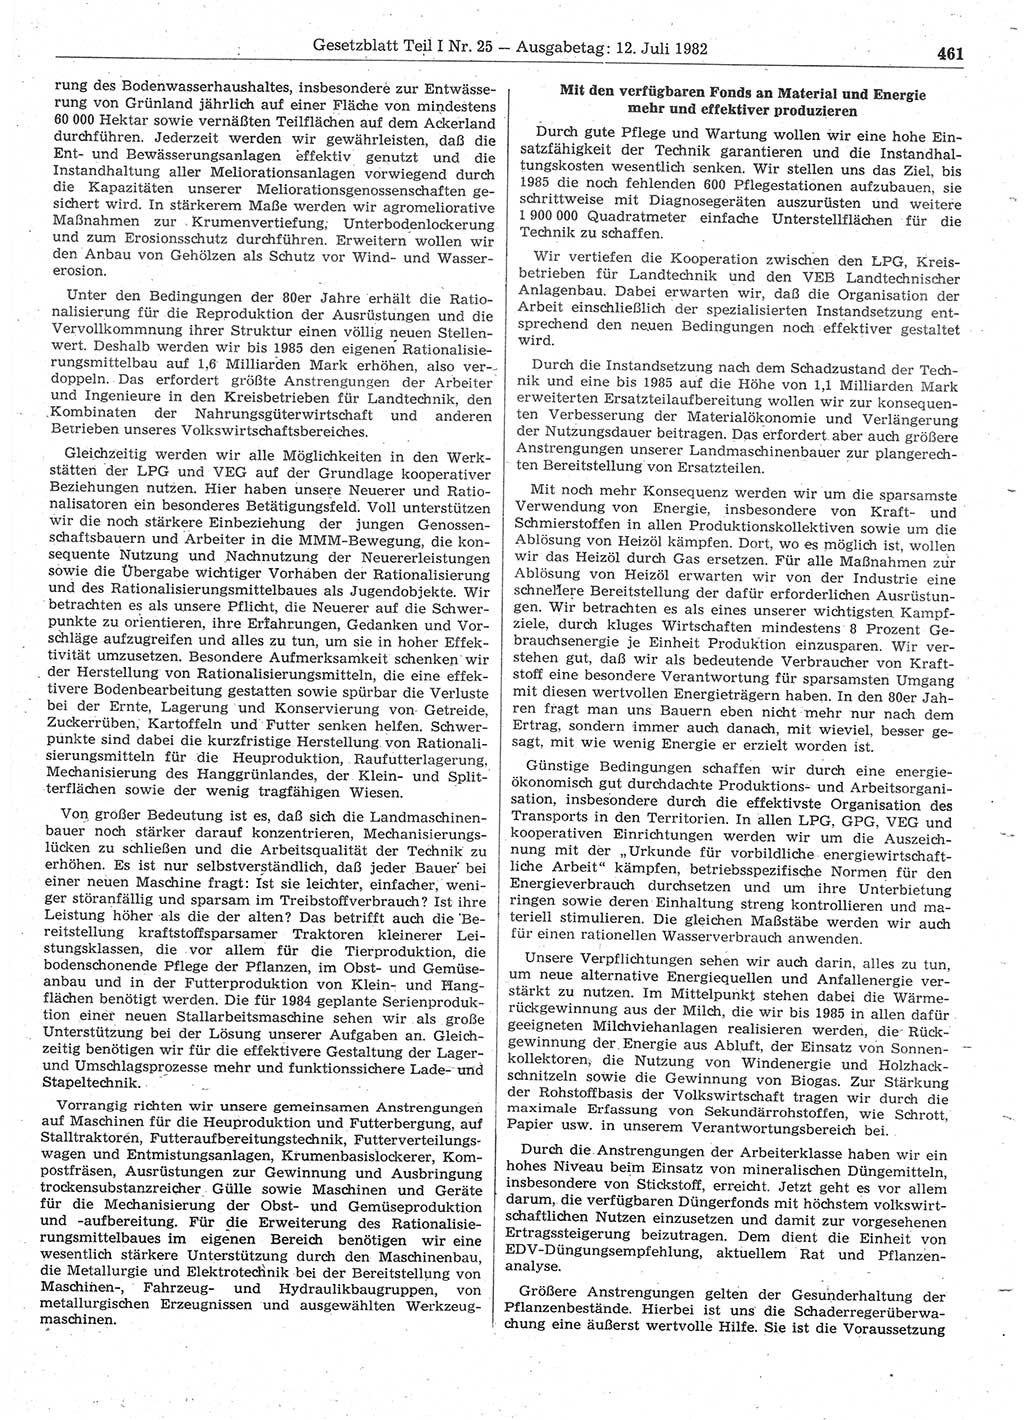 Gesetzblatt (GBl.) der Deutschen Demokratischen Republik (DDR) Teil Ⅰ 1982, Seite 461 (GBl. DDR Ⅰ 1982, S. 461)